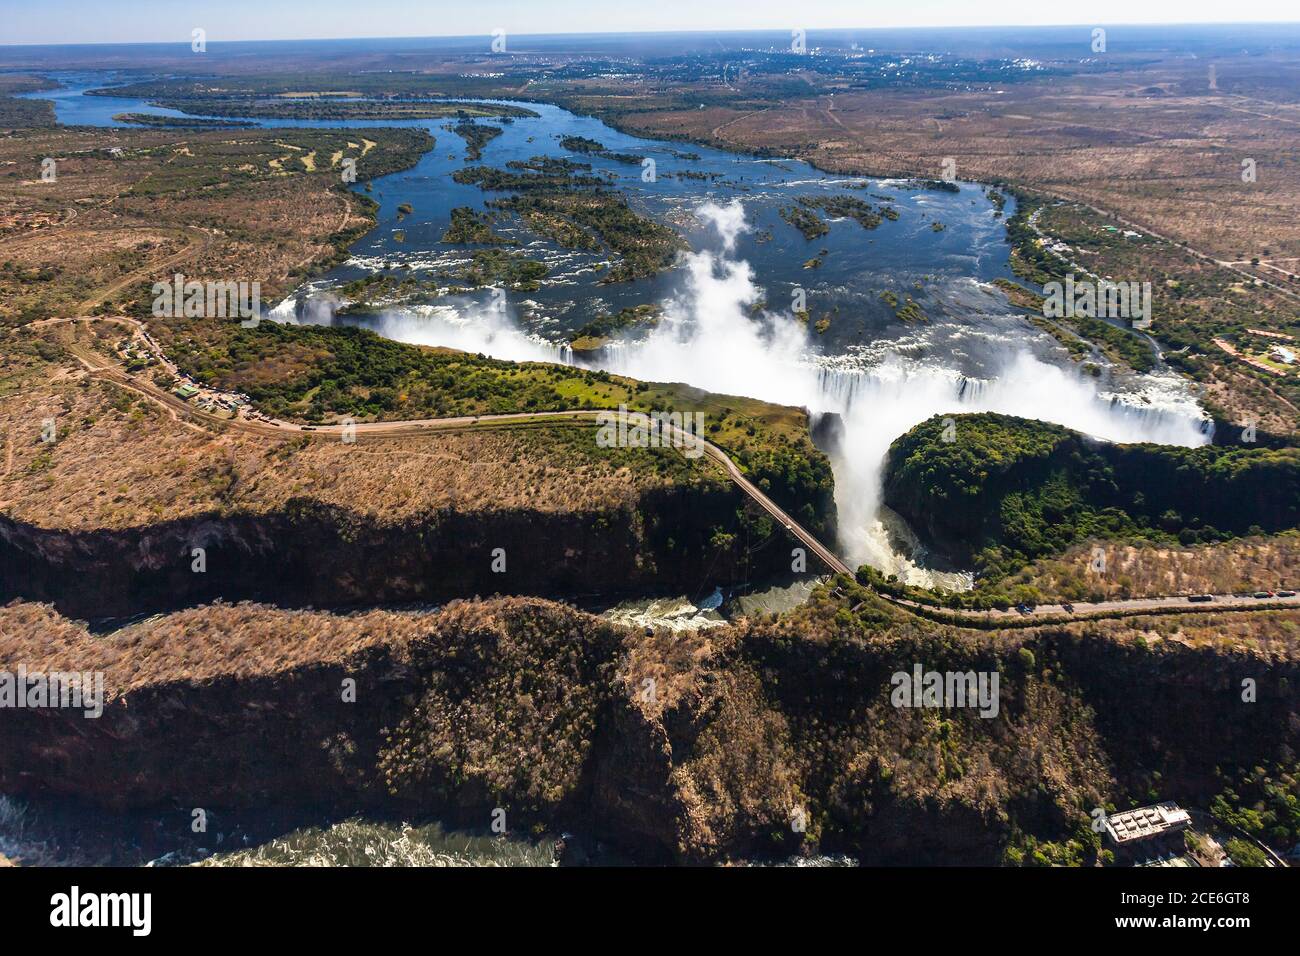 Victoria Falls und Zambezi River, Mosi-oa-Tunya, einer der größten Wasserfälle der Welt, Luftbild mit dem Hubschrauber, Sambia, Simbabwe, Grenze, Afrika Stockfoto